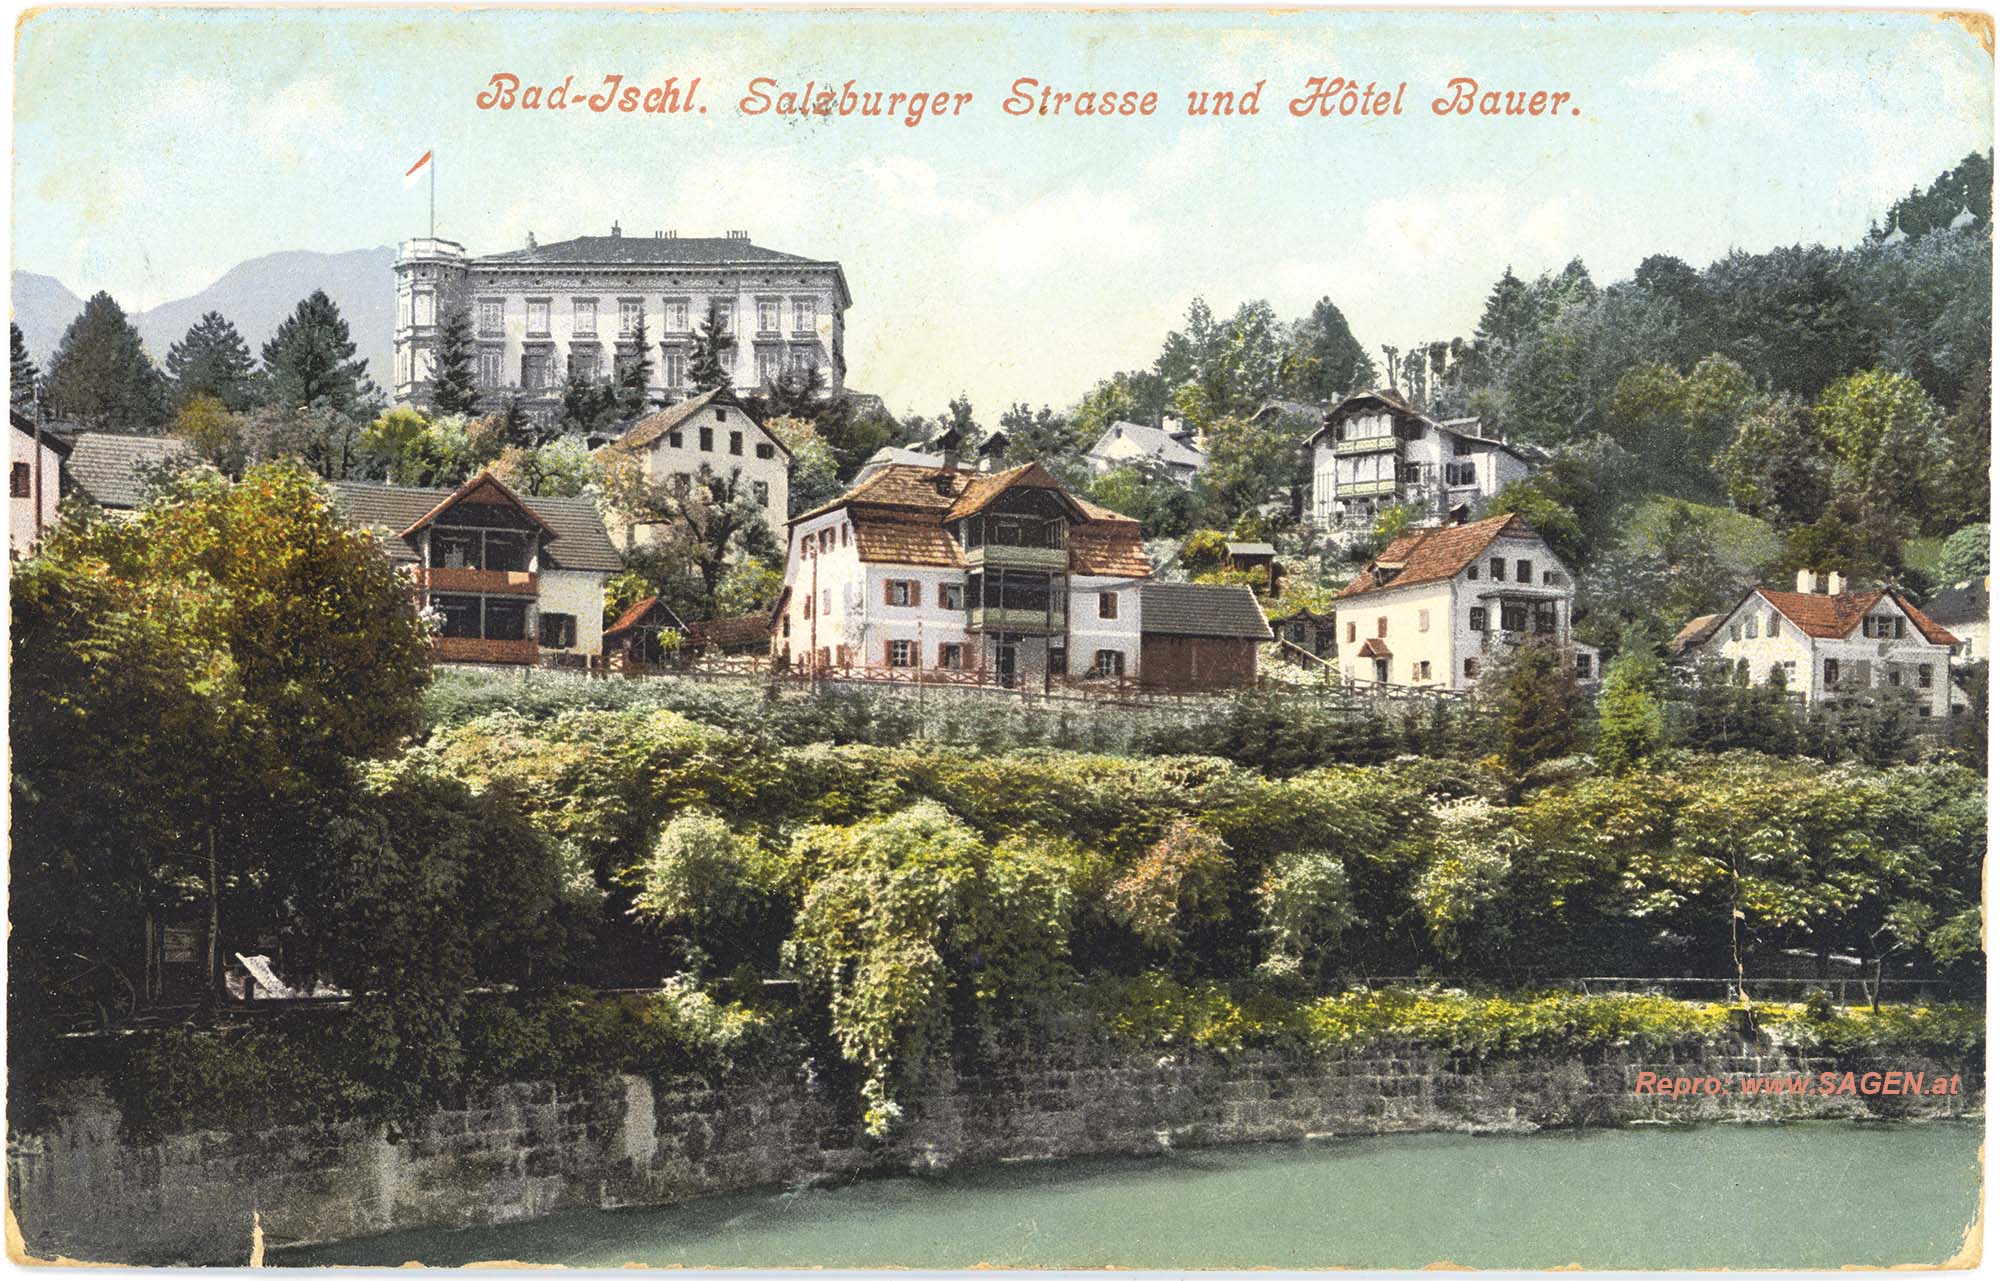 Bad-Ischl. Salzburger Strasse und Hotel Bauer.